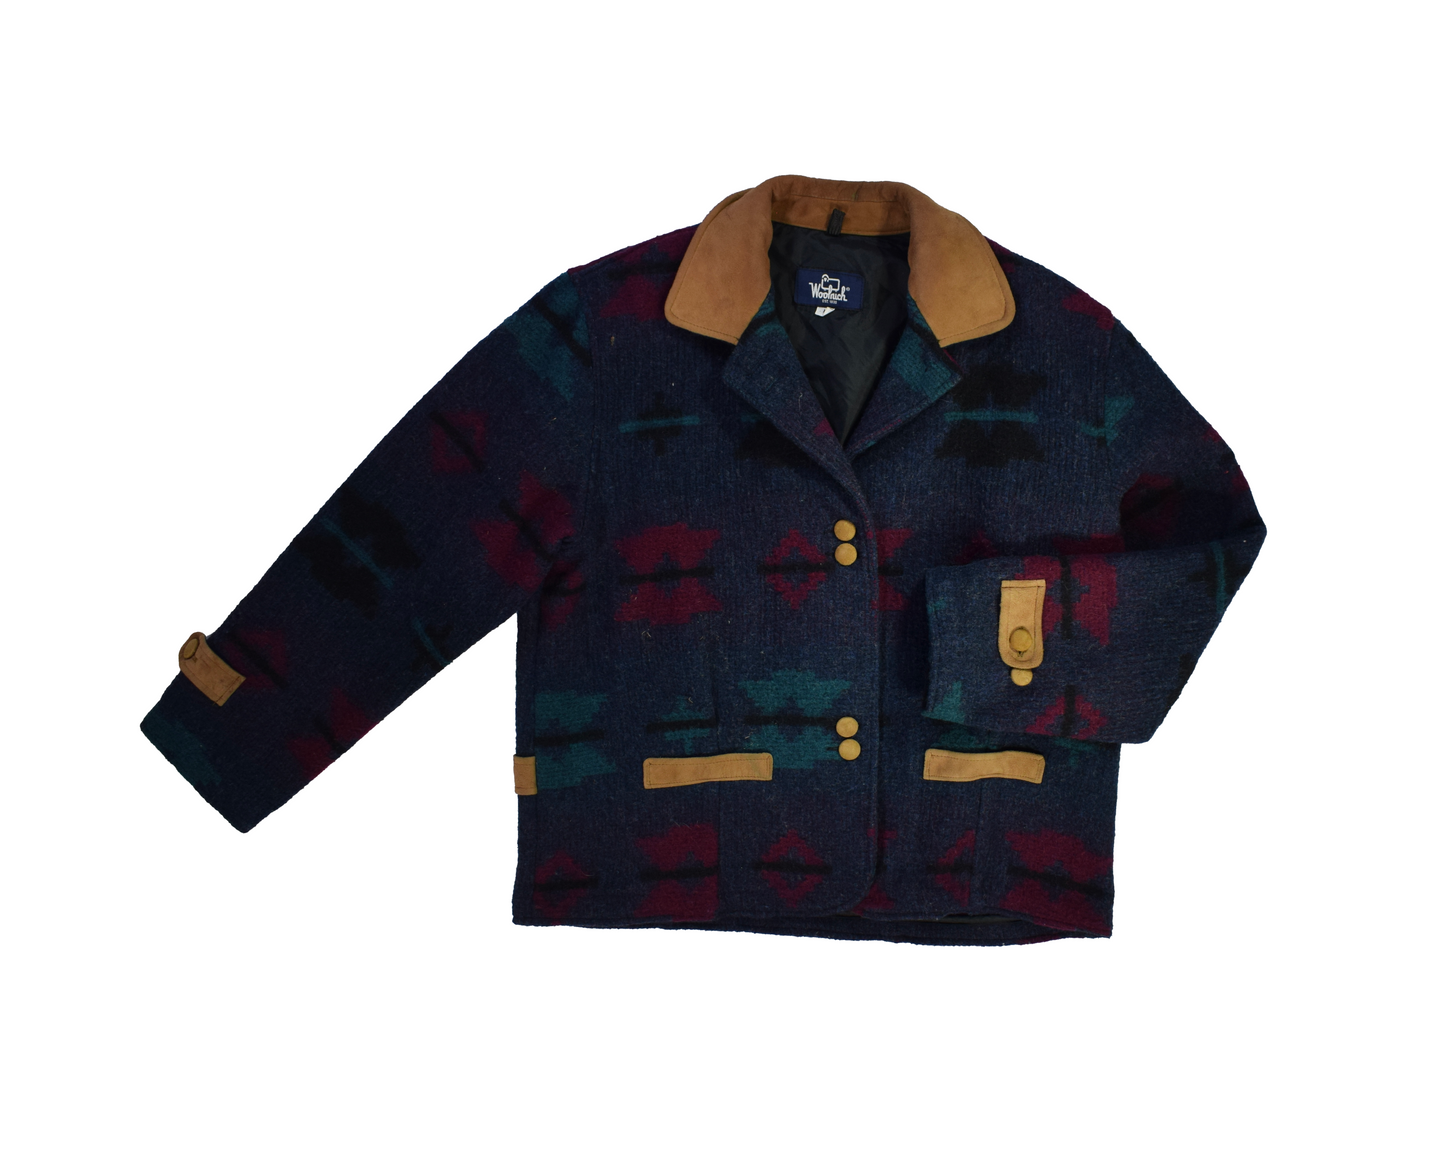 Vintage Woolruch Jacket